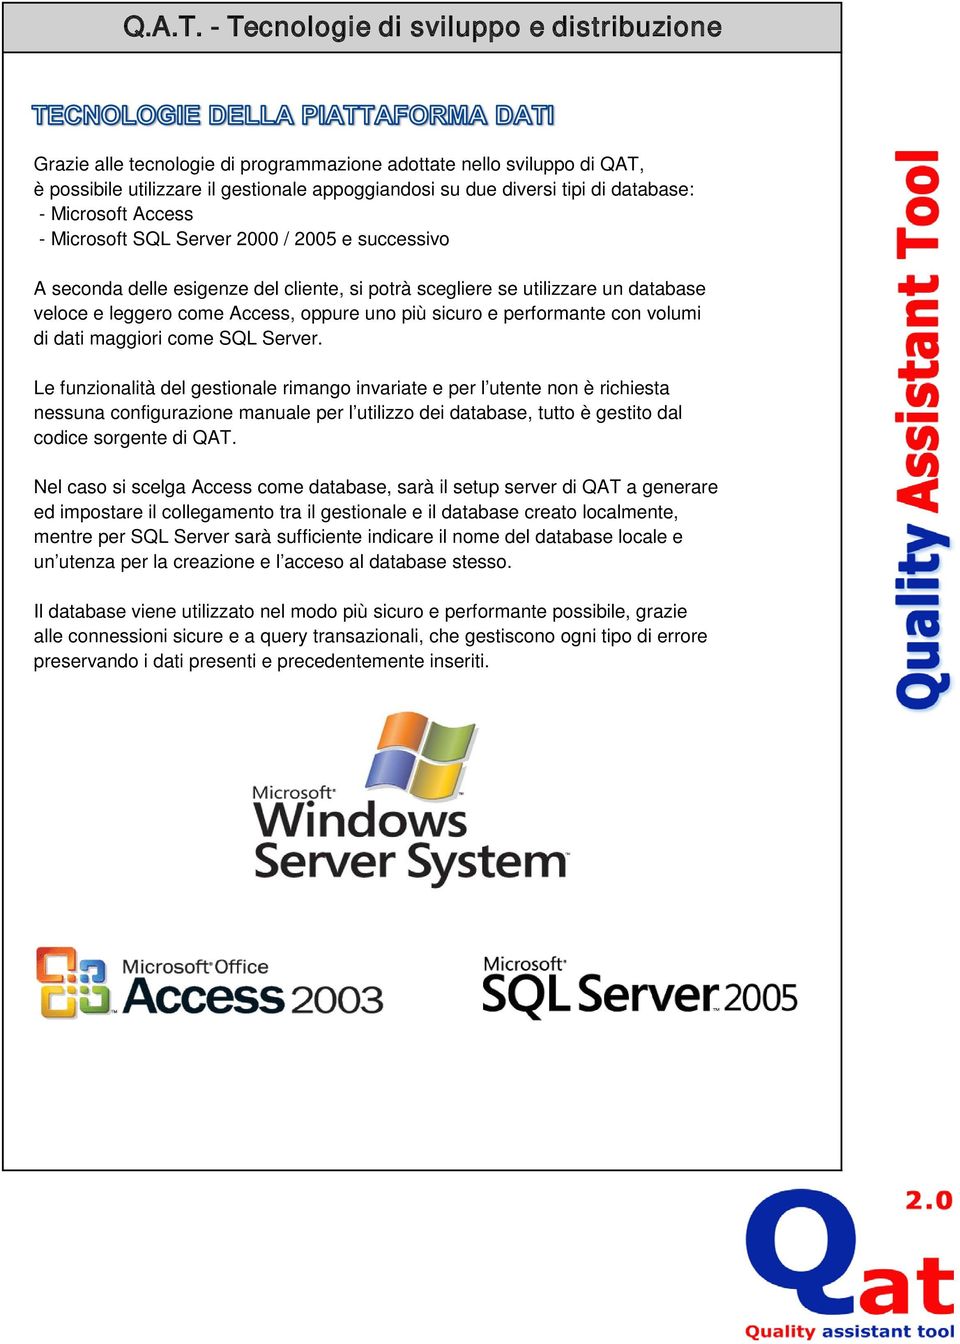 Microsoft Access - Microsoft SQL Server 2000 / 2005 e successivo A seconda delle esigenze del cliente, si potrà scegliere se utilizzare un database veloce e leggero come Access, oppure uno più sicuro